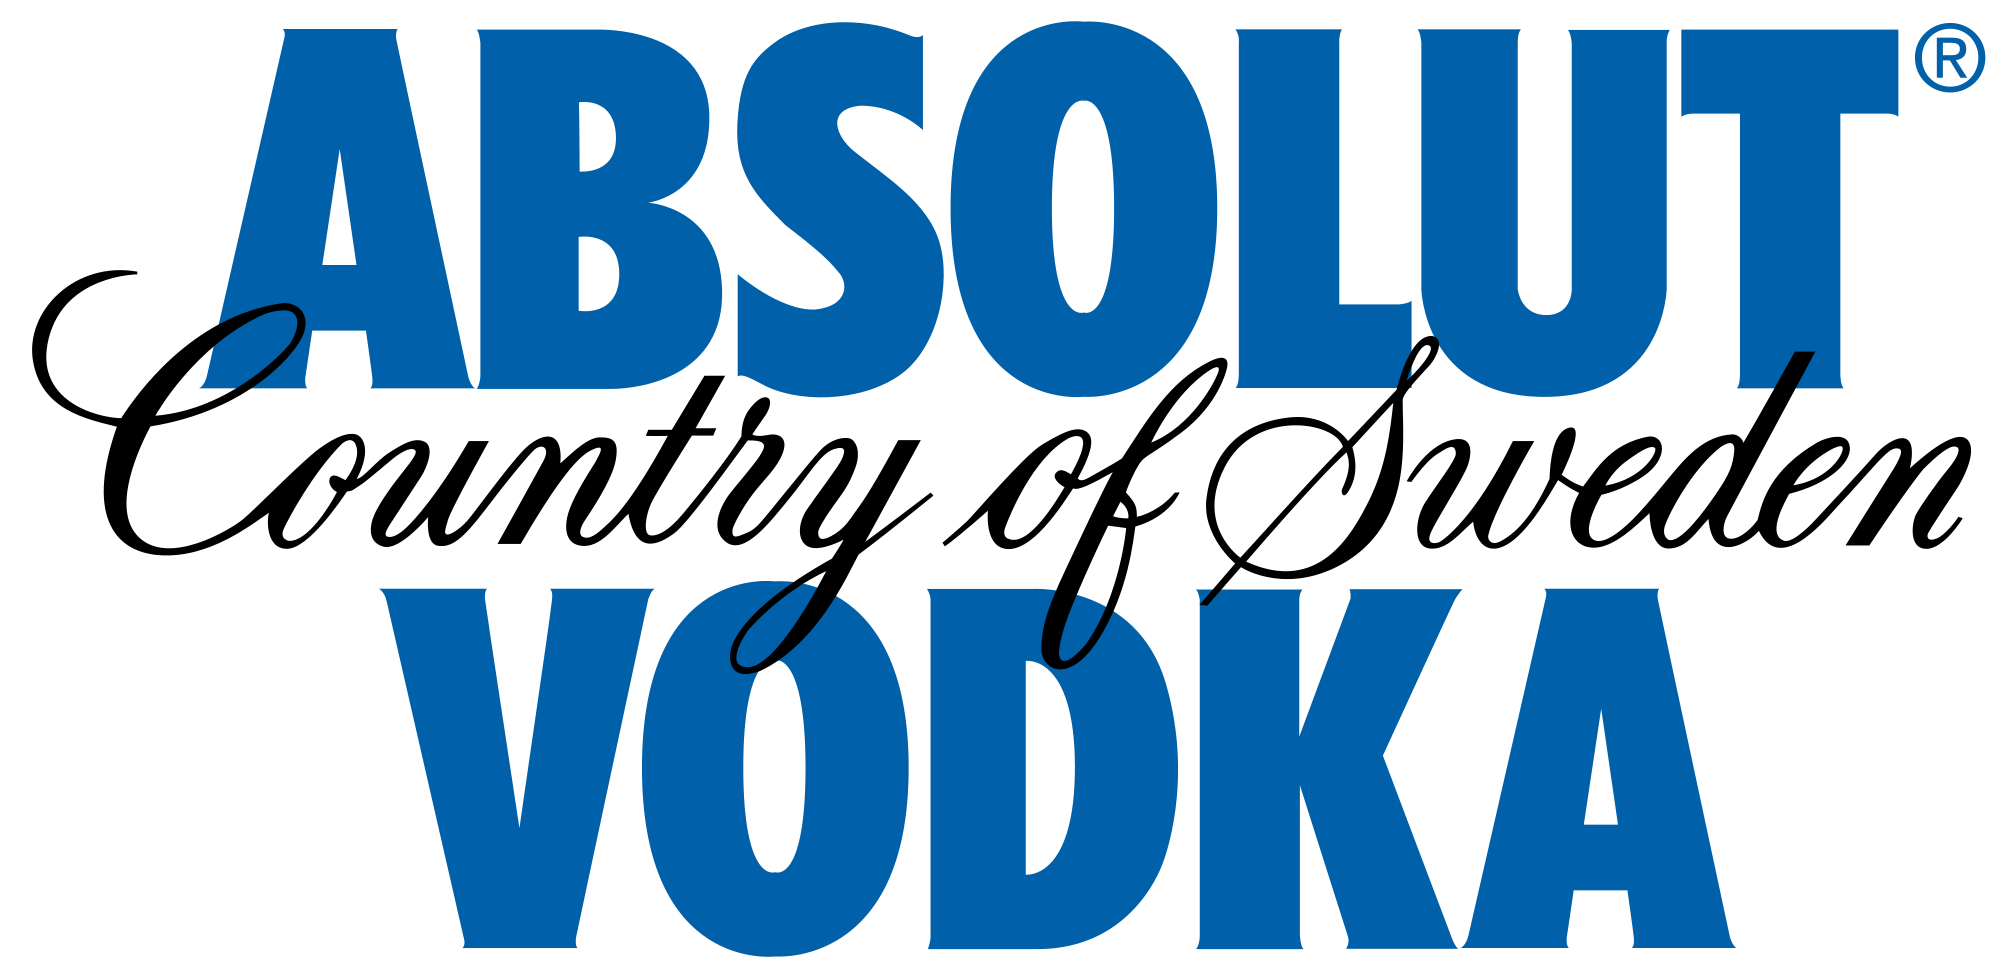 Absolut Vodka Vector Logo Wallpaper